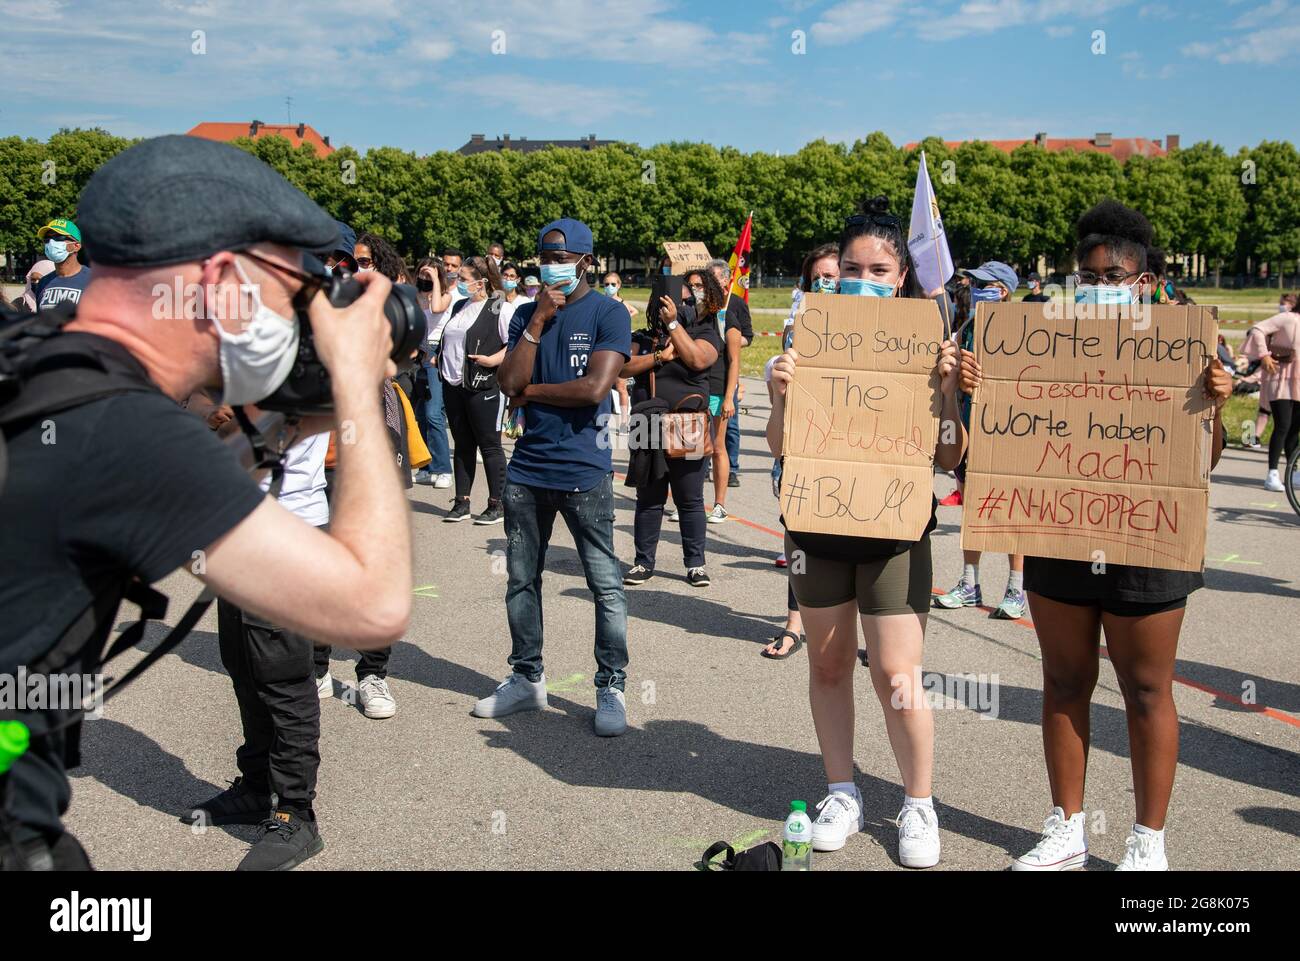 Fotograf schießt ein Bild Bild von zwei Aktivistinnen mit Schildern: " Stop  saying then-word # BLM ", " Worte haben Geschichte Worte haben Macht #  N-WStoppen ". Mehrere hundert Menschen haben sich